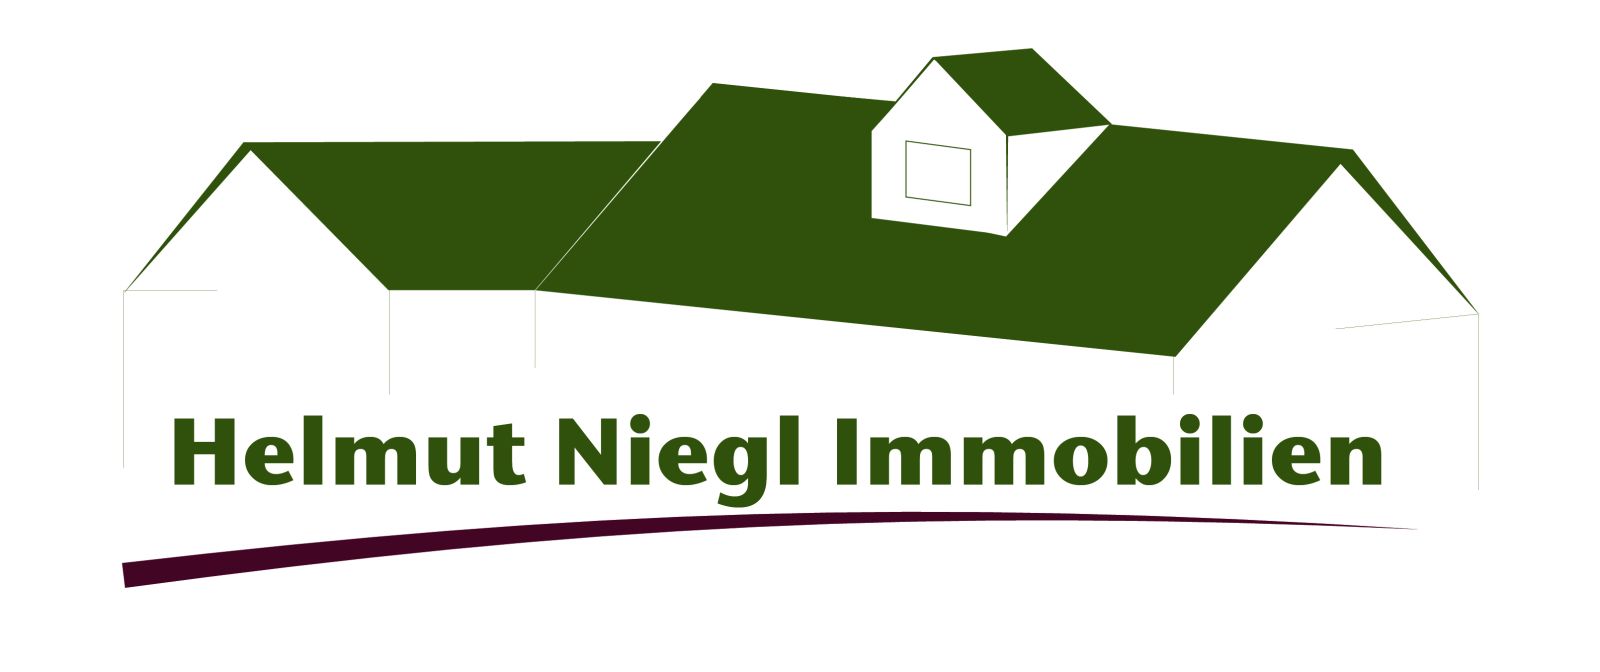 Helmut Niegl Immobilien - Ihr Immobilienmakler in Sachsen im Landkreis Meißen